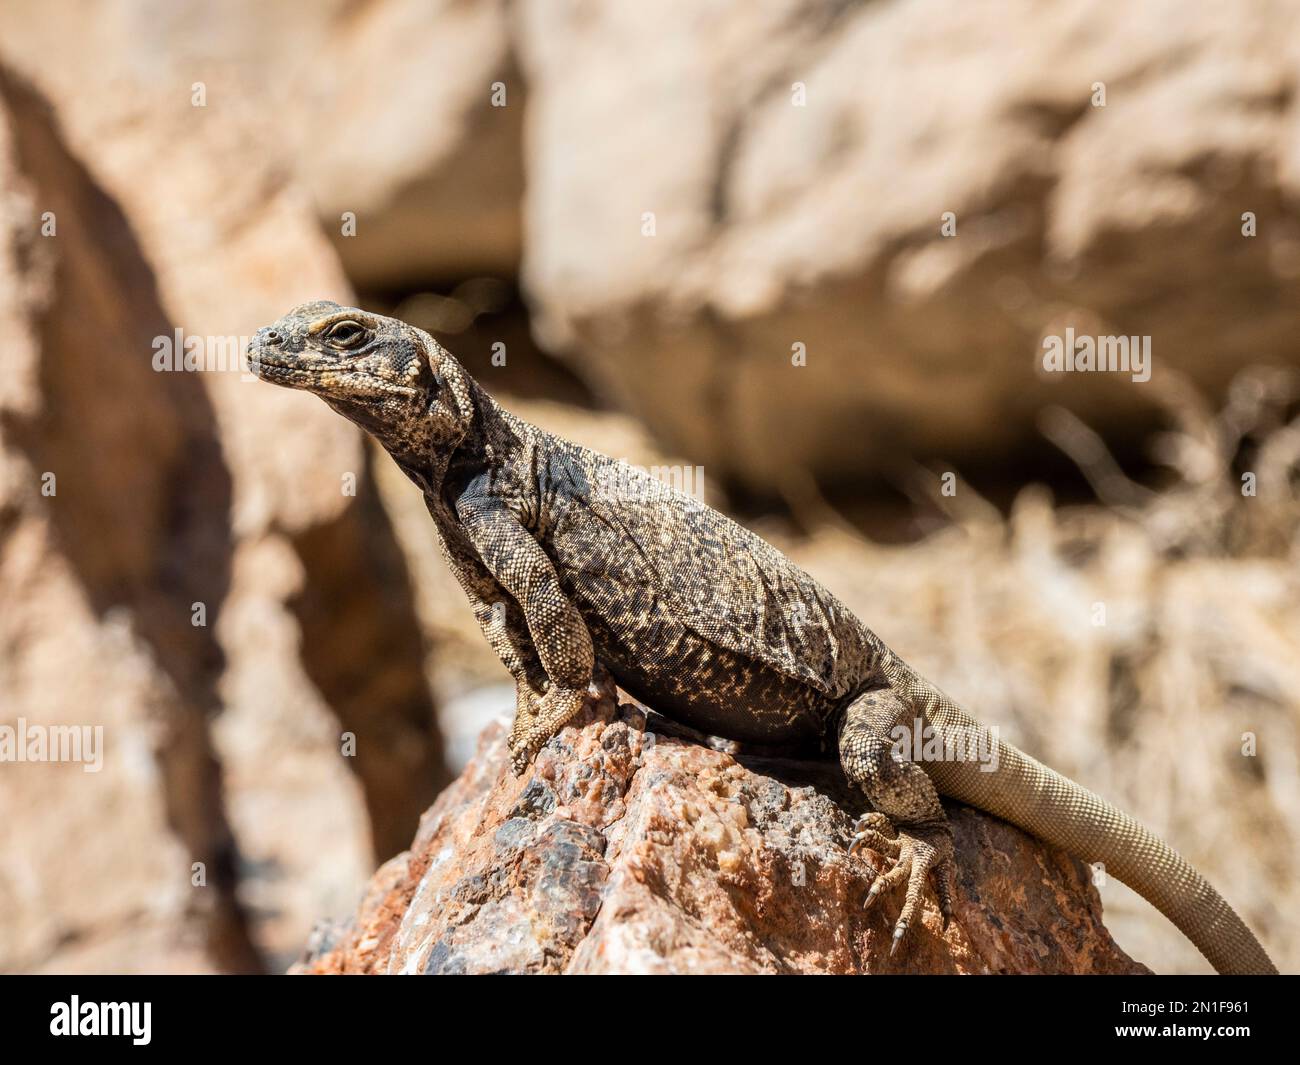 Common Chuckwallala (Sauromalus ater), champ de plomb dans le canyon Titus dans le parc national de la Vallée de la mort, Californie, États-Unis d'Amérique, Amérique du Nord Banque D'Images